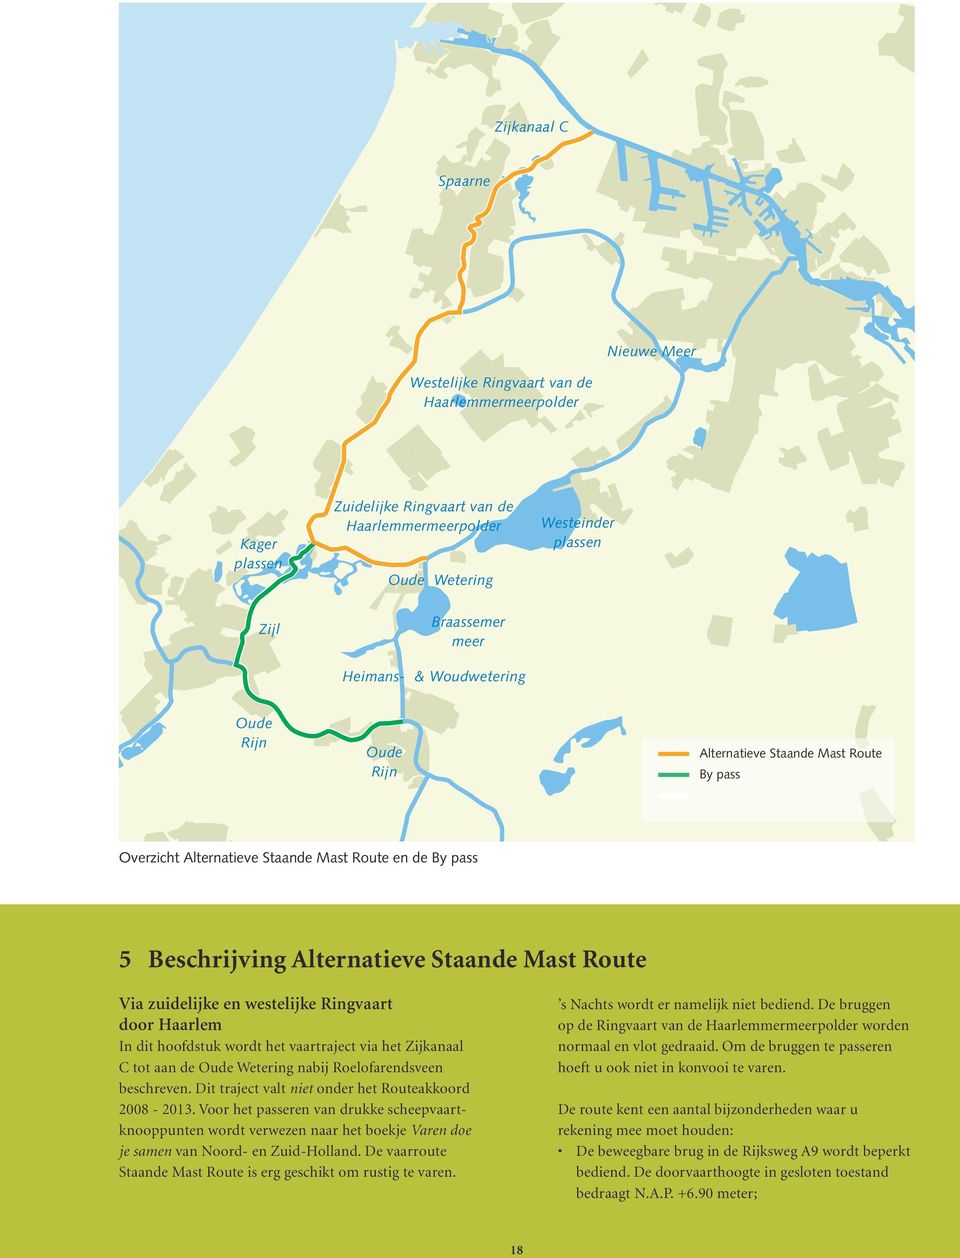 Via zuidelijke en westelijke Ringvaart door Haarlem In dit hoofdstuk wordt het vaartraject via het Zijkanaal C tot aan de Oude Wetering nabij Roelofarendsveen beschreven.